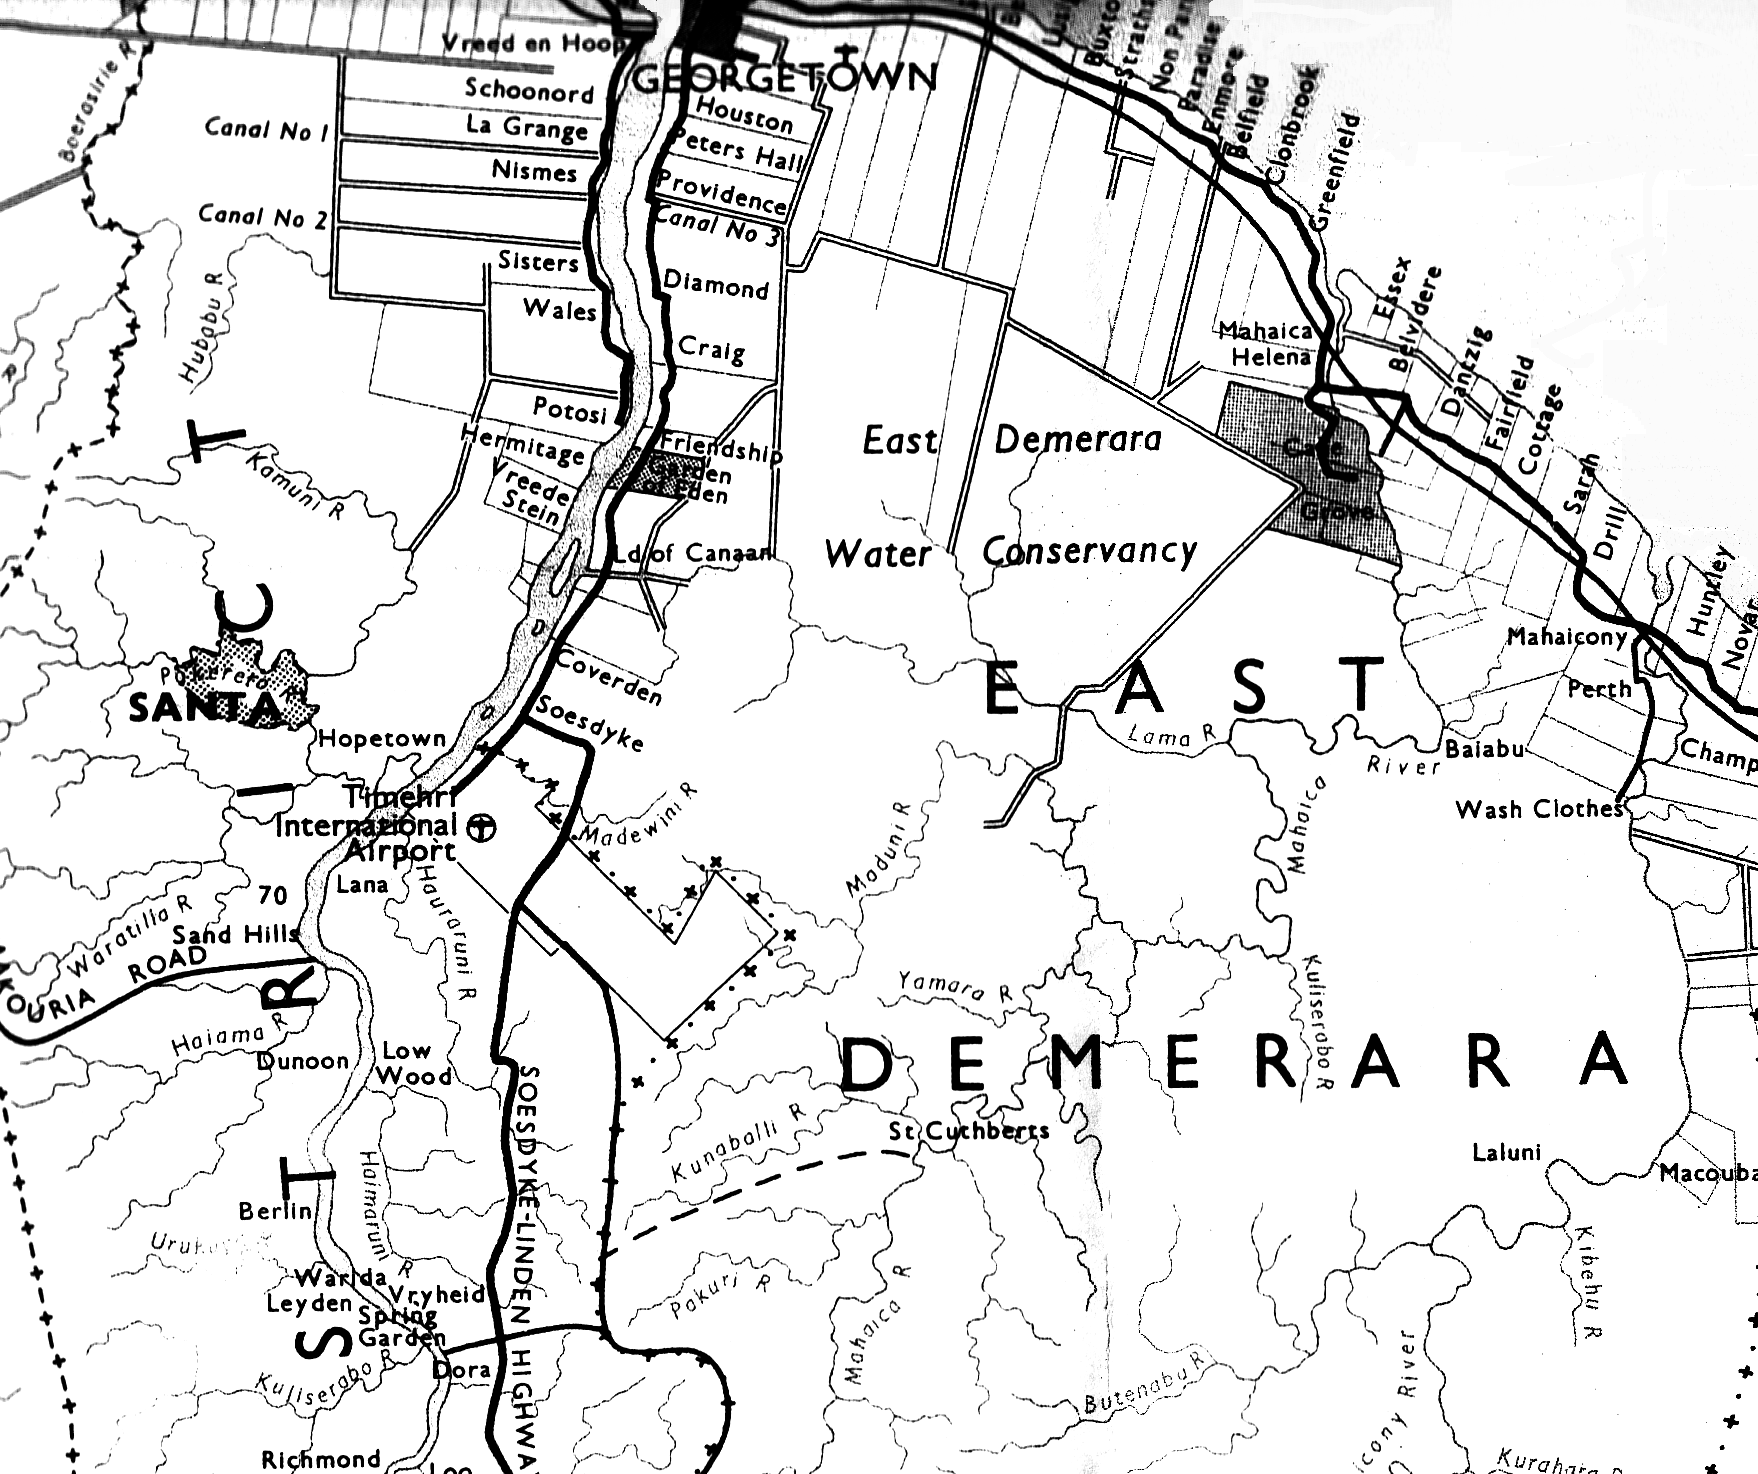 East Demerara